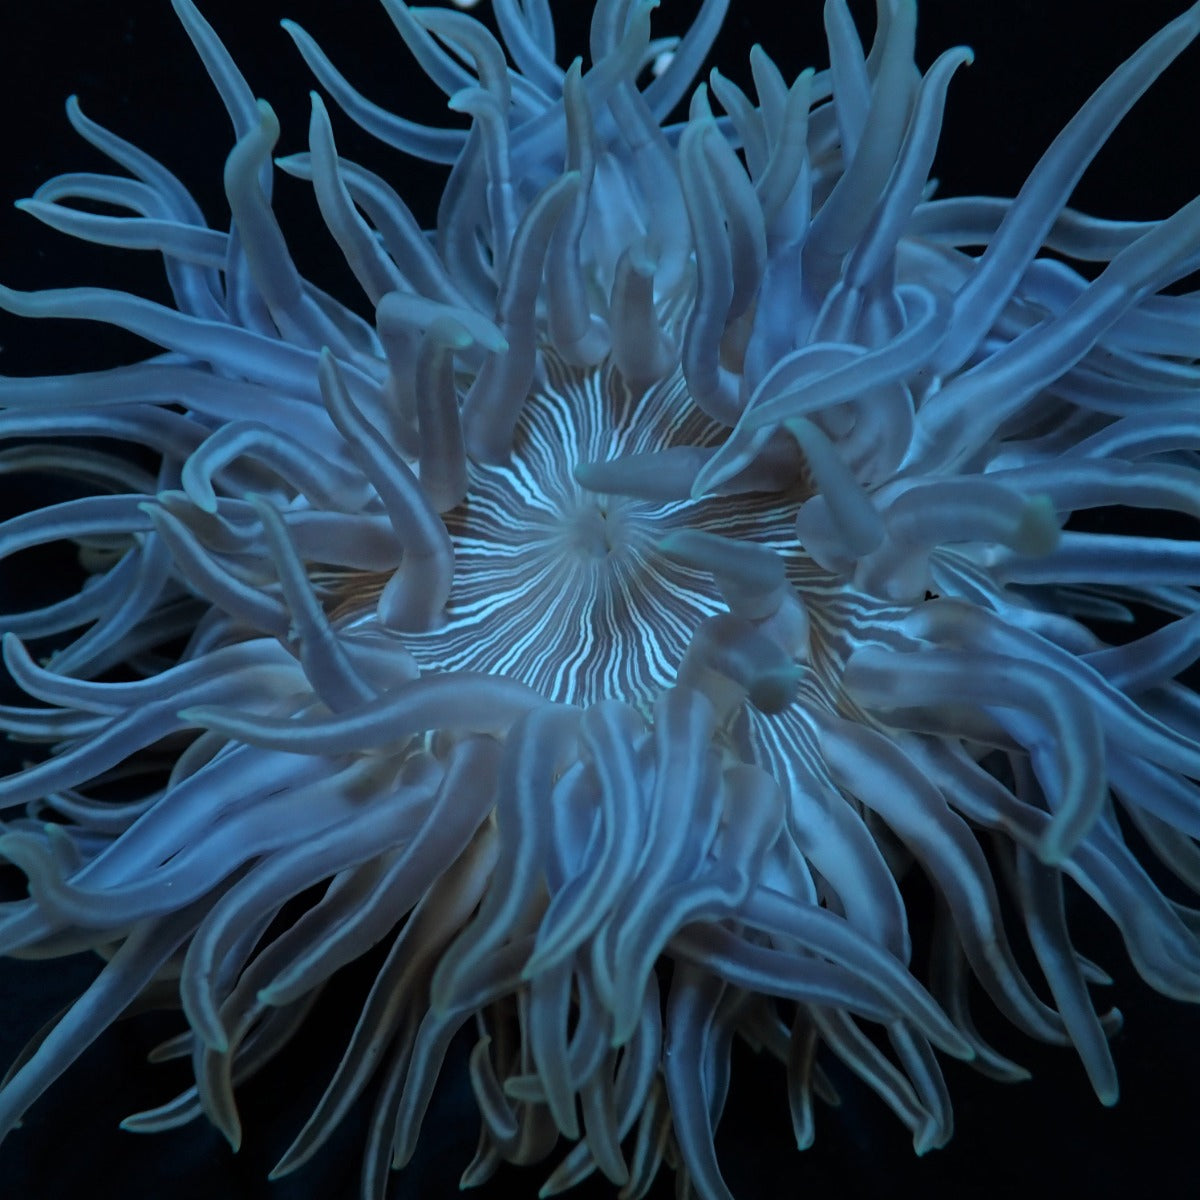 Macrodactyla doreensis - Long Tentacle anemone